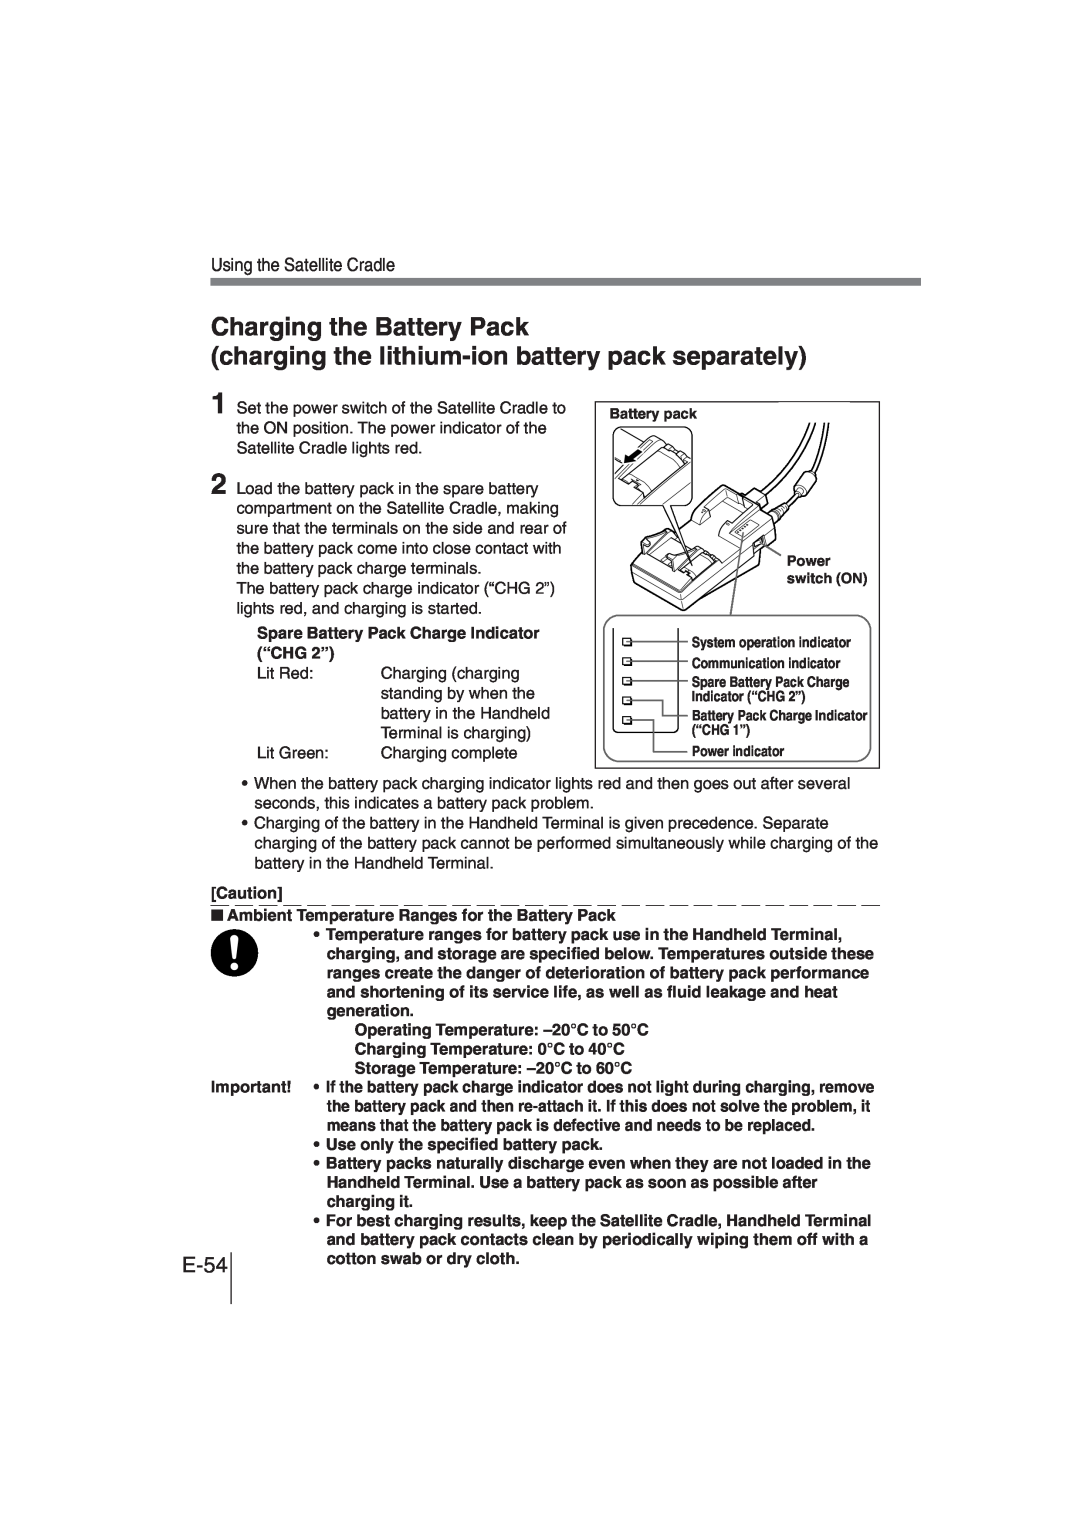 Casio DT-930 manual charging the lithium-ionbattery pack separately, Charging the Battery Pack, Using the Satellite Cradle 